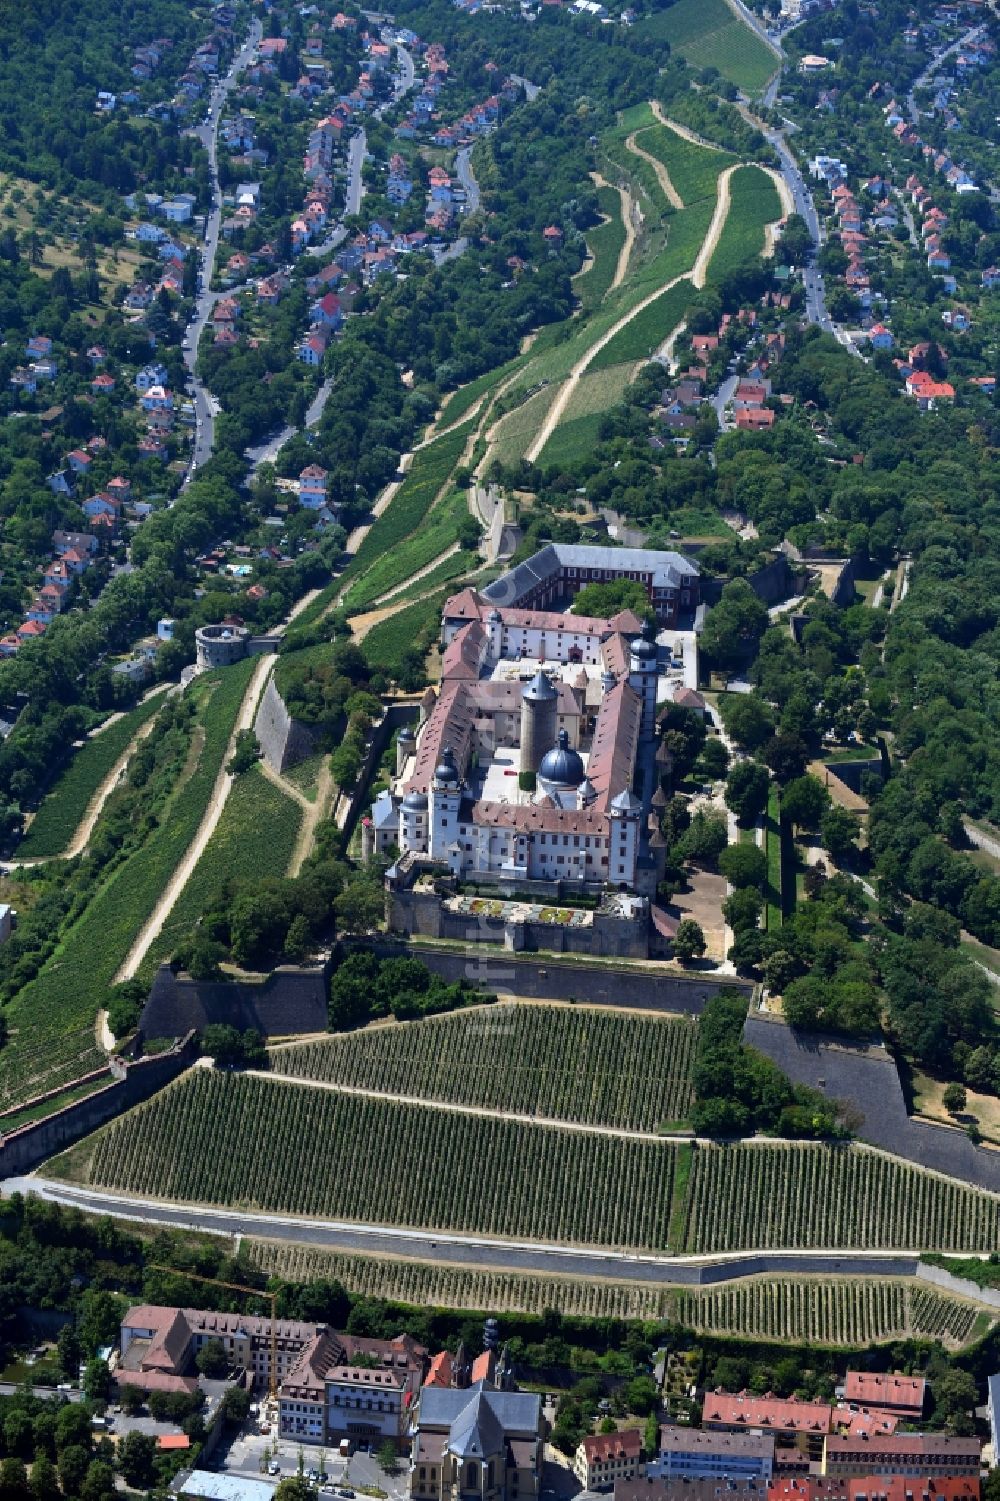 Luftbild Würzburg - Festung Marienberg in Würzburg im Bundesland Bayern